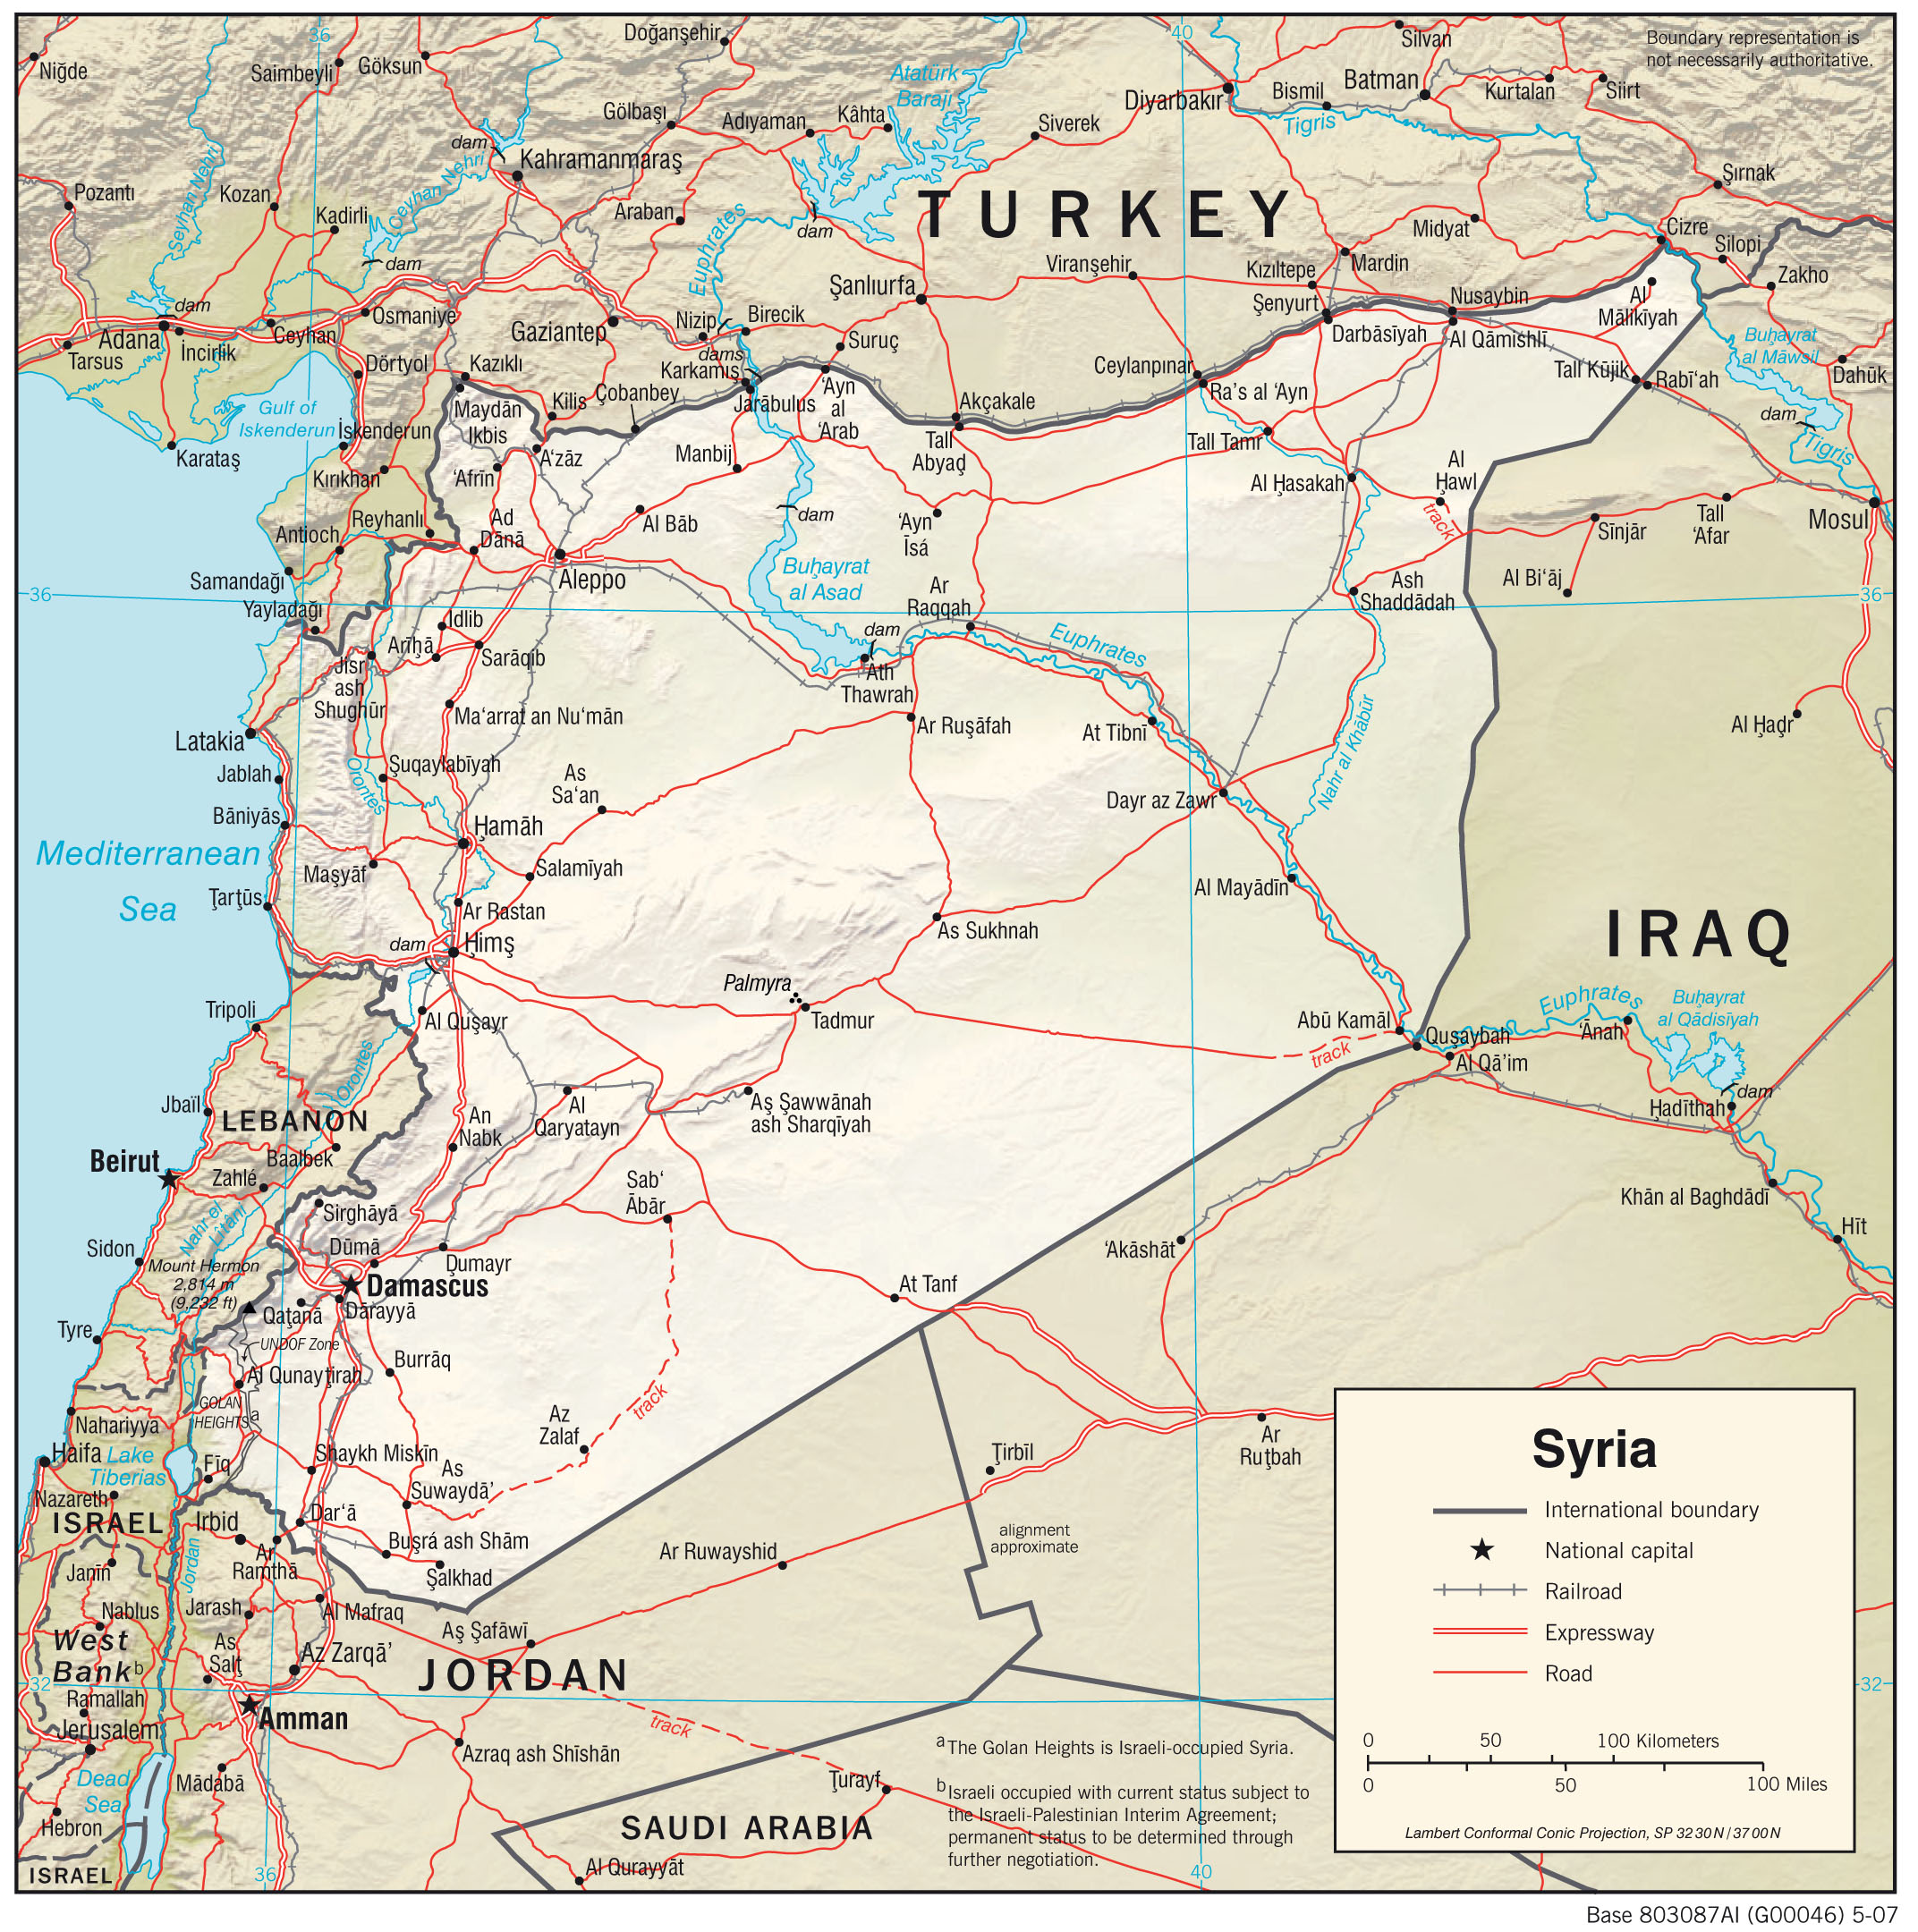 Αραβικός Σύνδεσμος: Δεν υπάρχει ακόμη ομοφωνία  για την επιστροφή της Συρίας στον οργανισμό